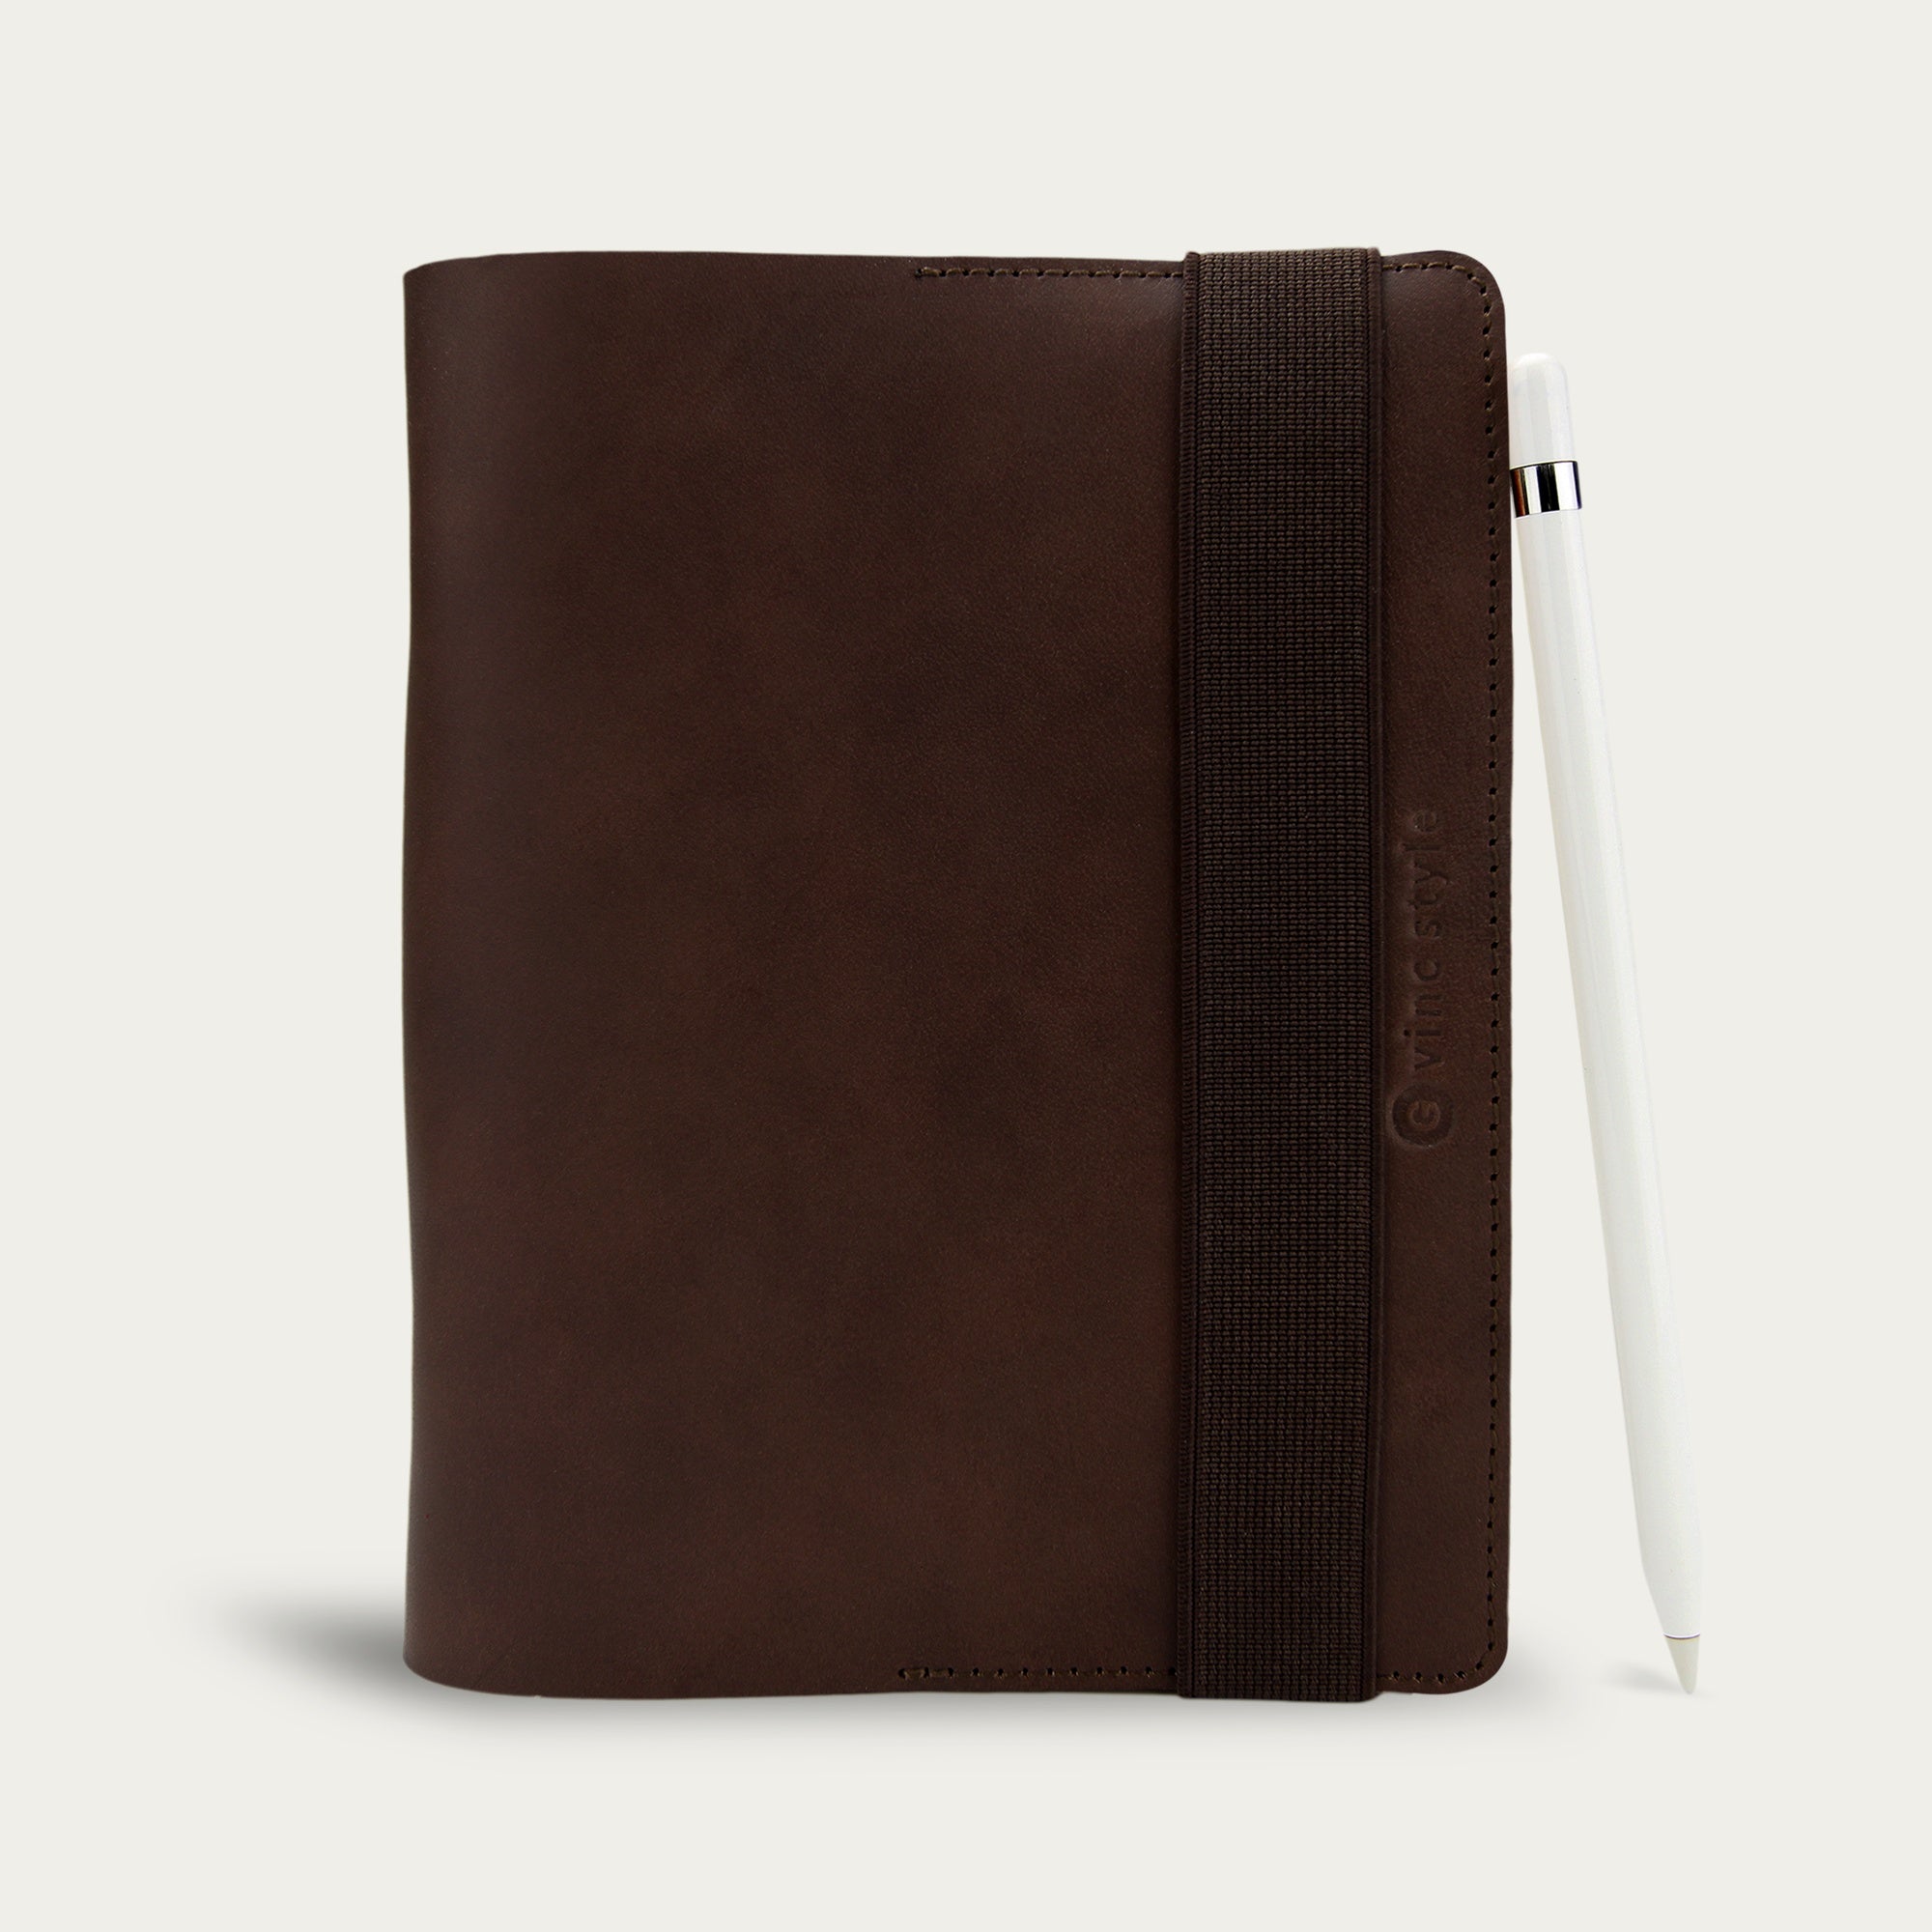 สมุดโน๊ต ปกหนังแท้ สลักชื่อได้ Leather Elastic Notebook B6